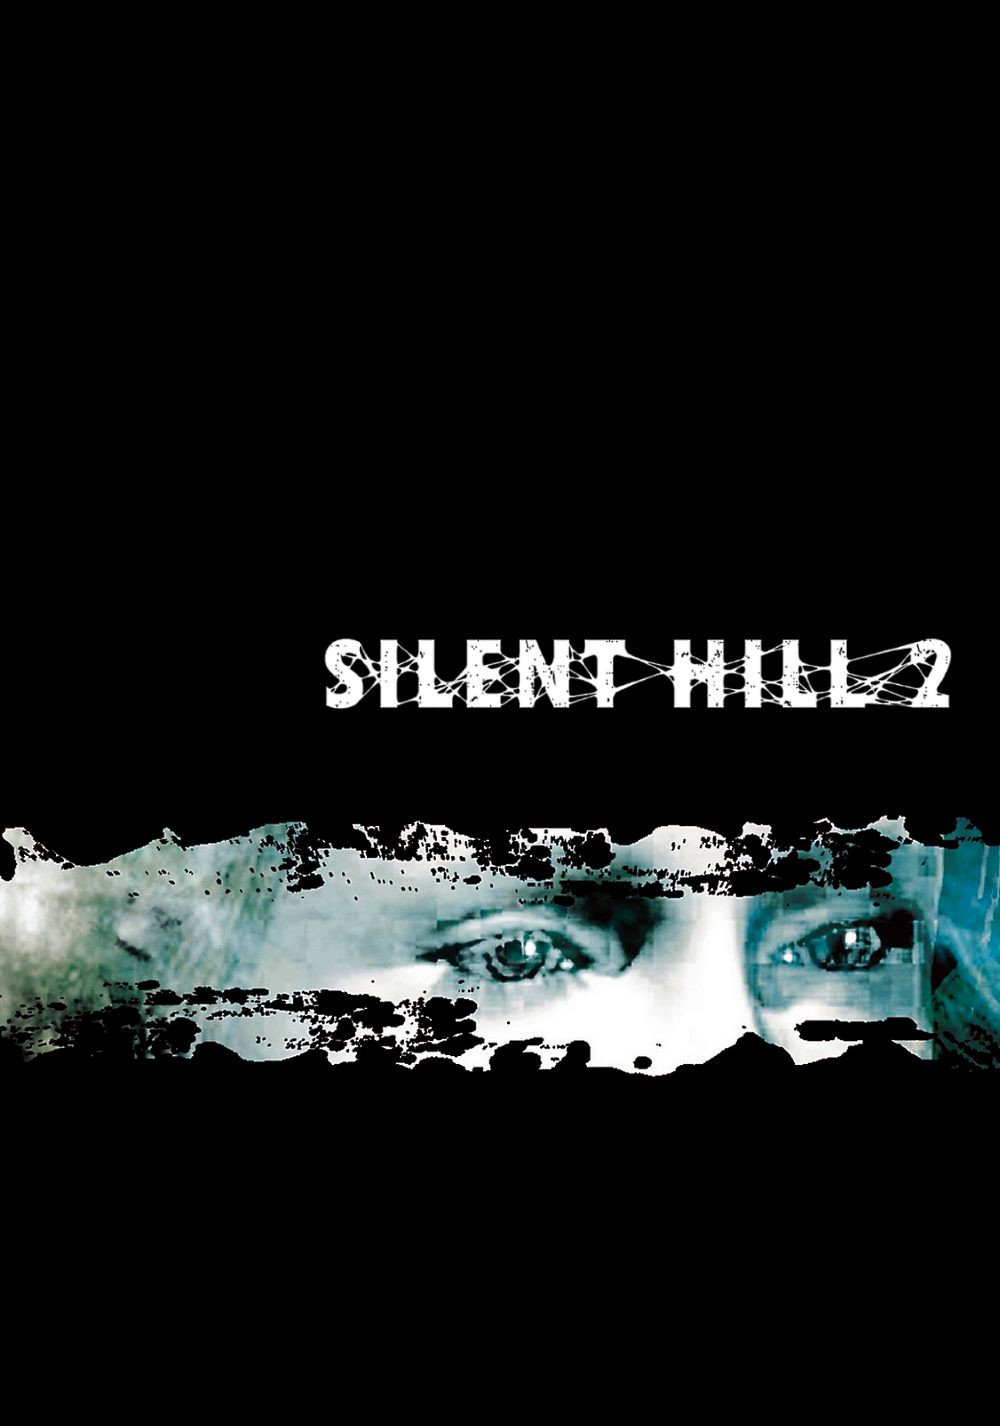 SILENT HILL 2 MEM IT IS SAD PS5 BOX by PREDATOR-ASSASSIN on DeviantArt